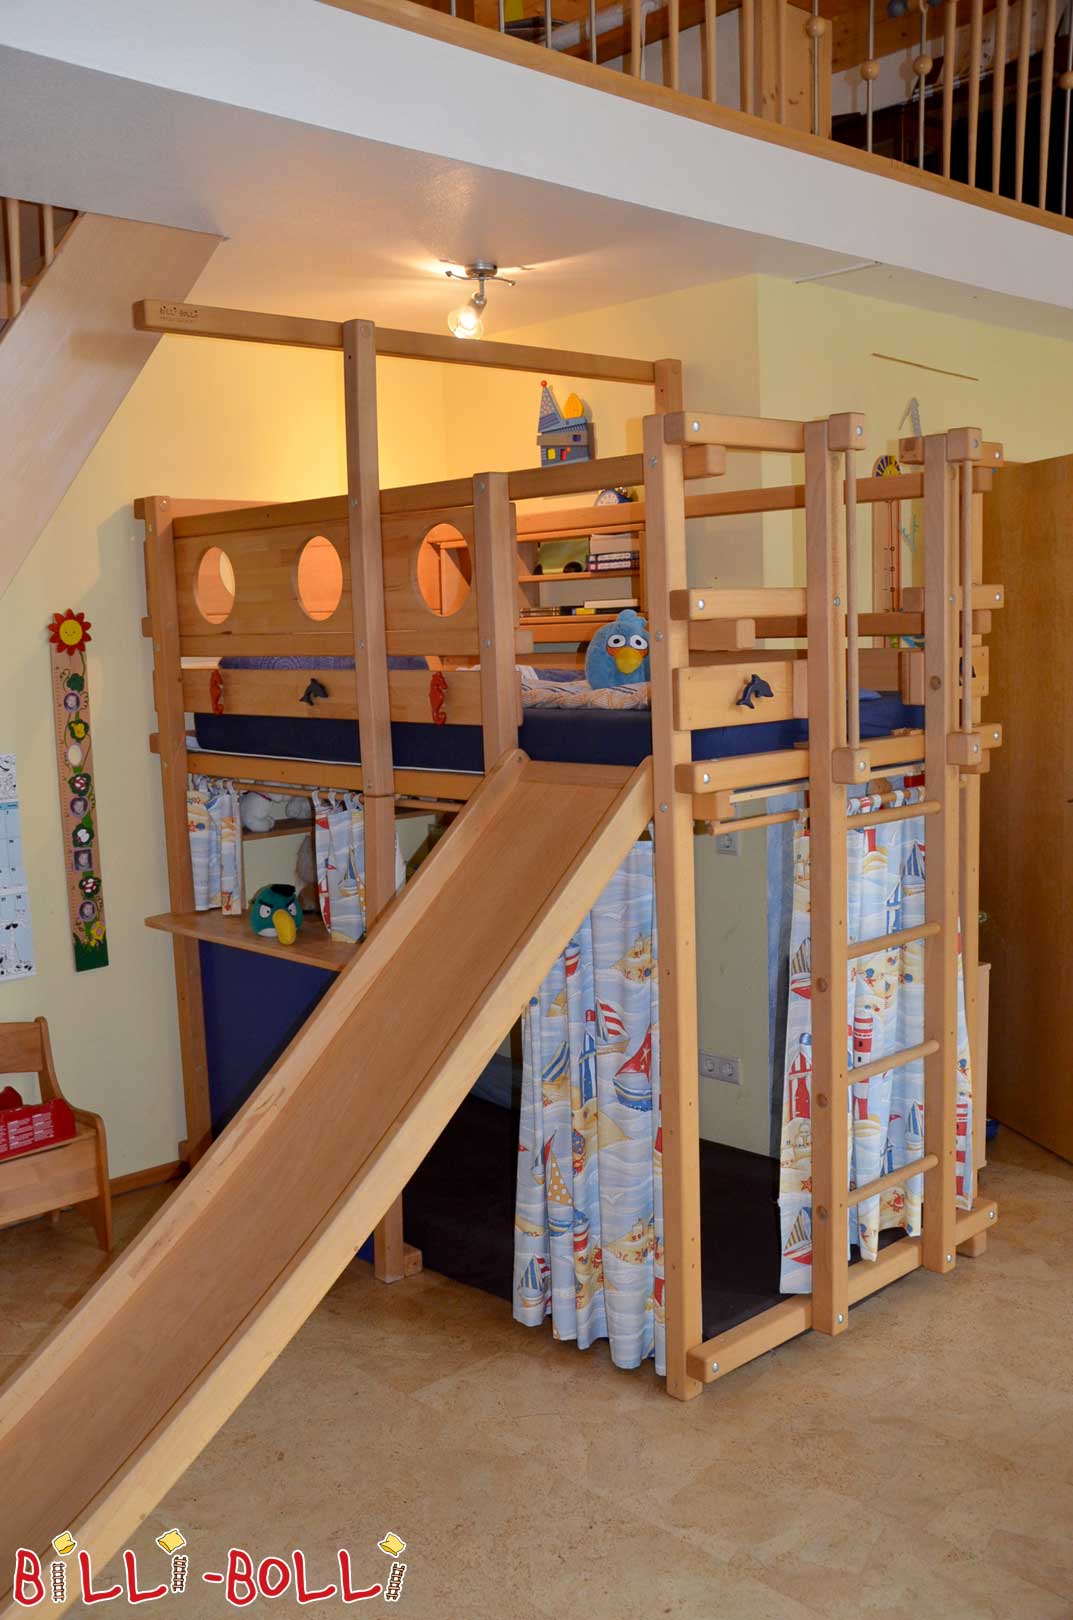 Piraatide pööninguvoodi, mis on valmistatud pöögist slaidiga ja koobas kardinatega (Loft-voodi kasvab koos lapsega)